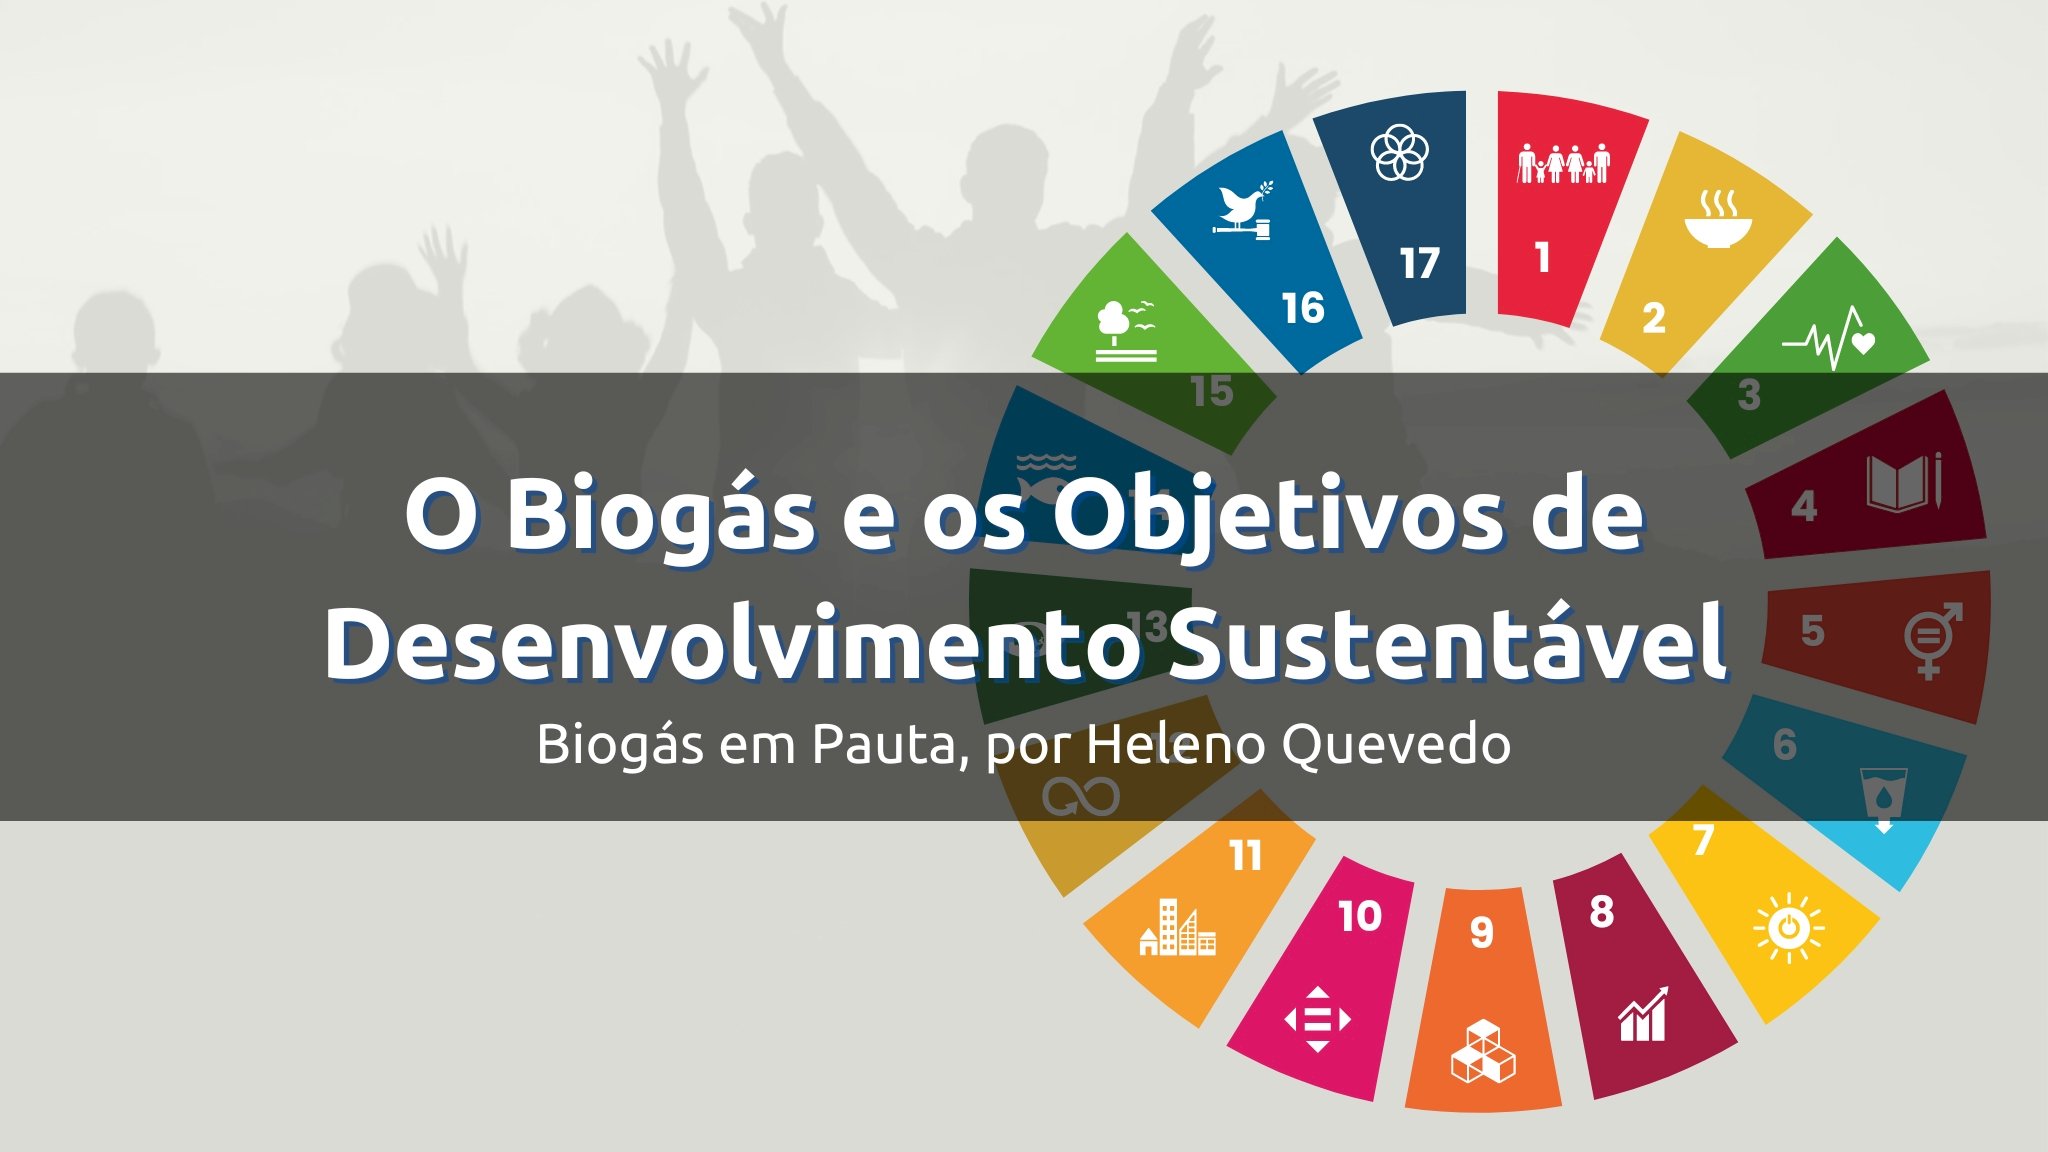 Biogás e os Objetivos de Desenvolvimento Sustentável (ODS)